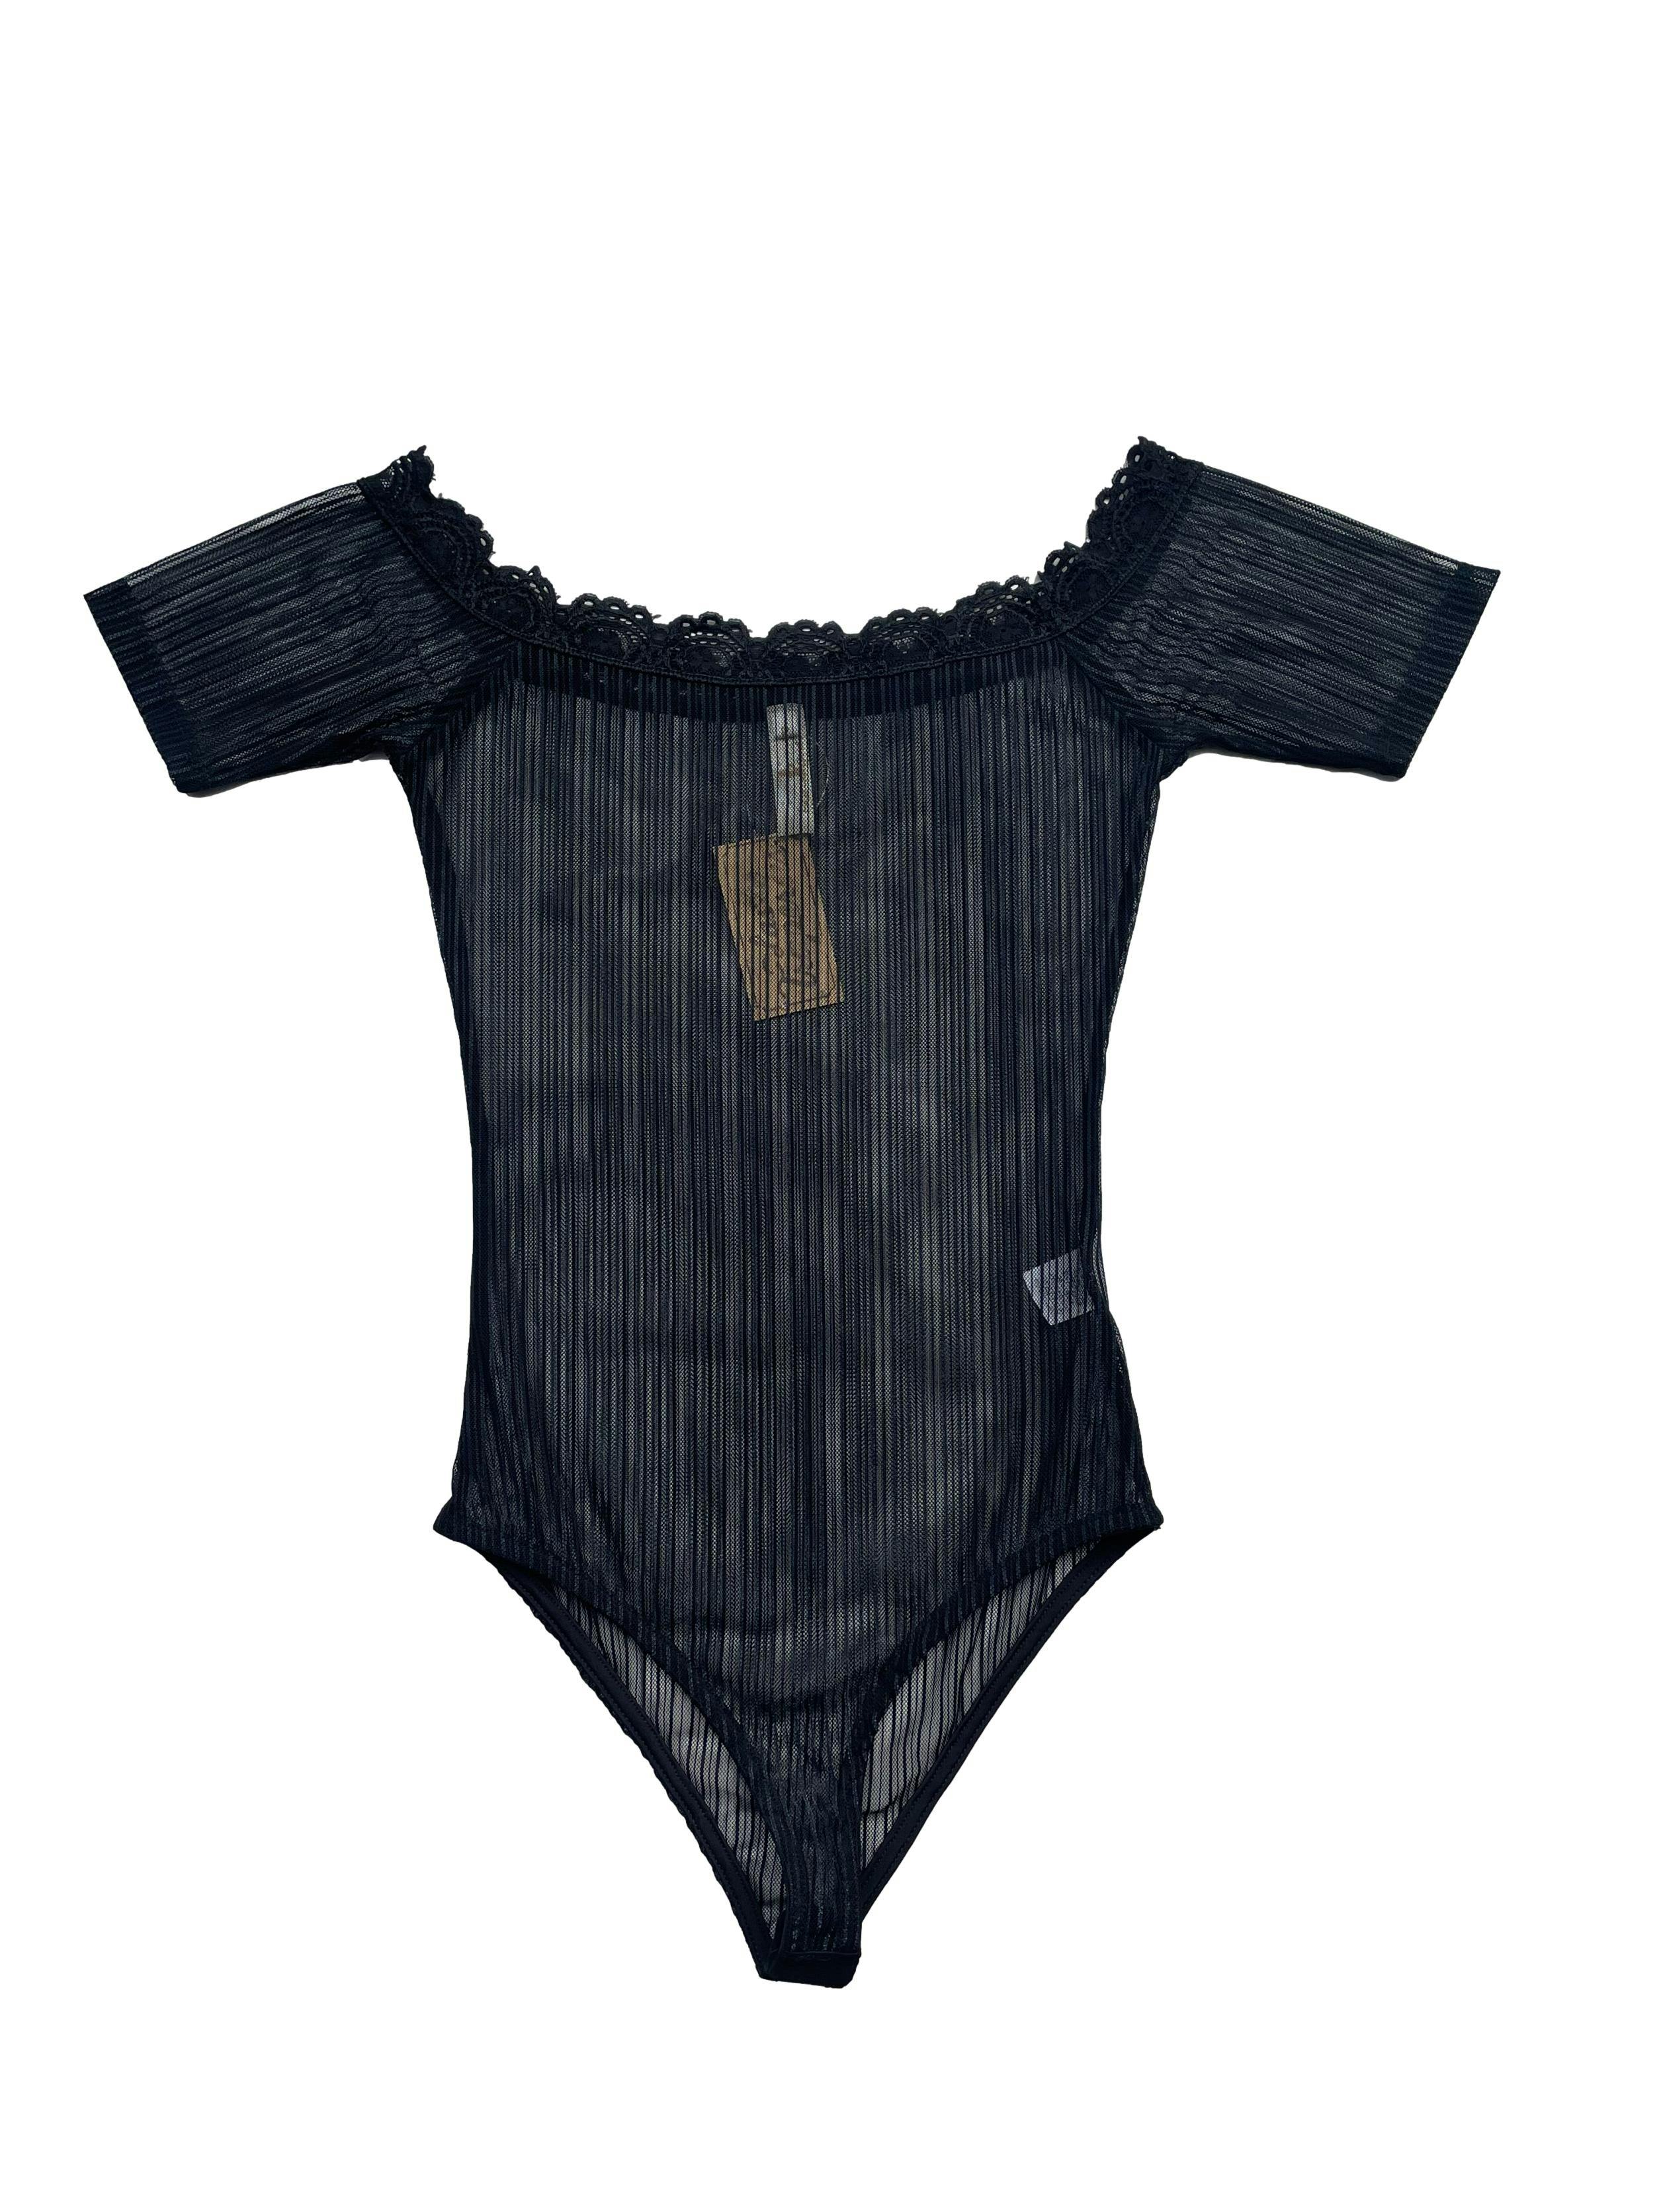 Body negro de mesh con hilo metalizado y encaje en escote. Busto 70cm sin estirar, Largo 65cm.